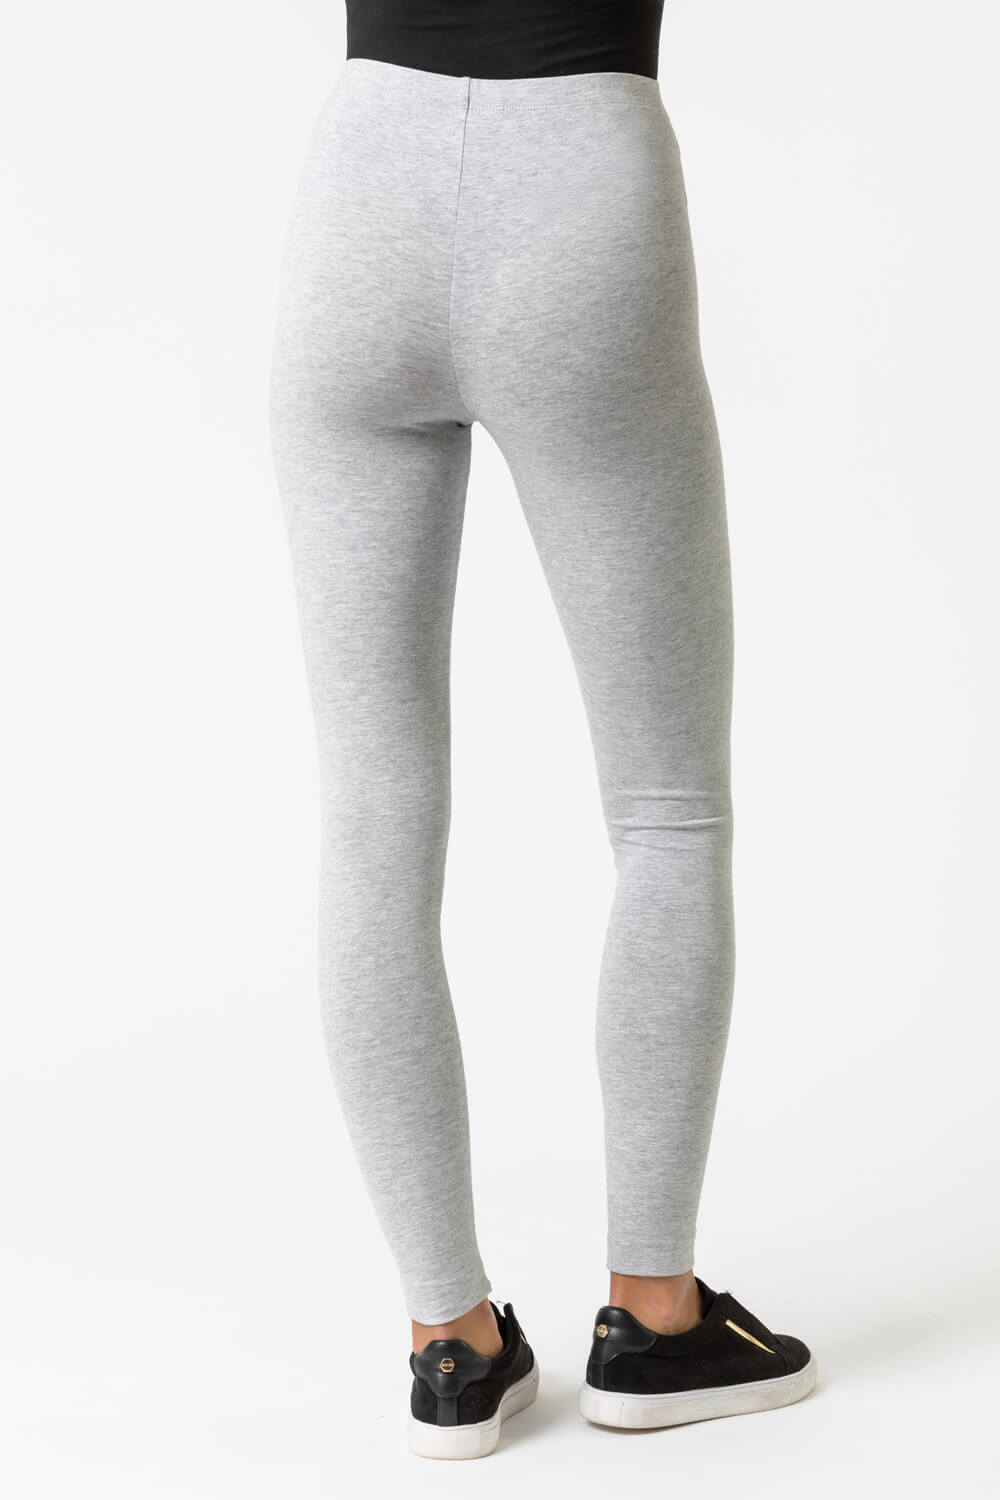 ASOS DESIGN Curve cotton legging in gray heather